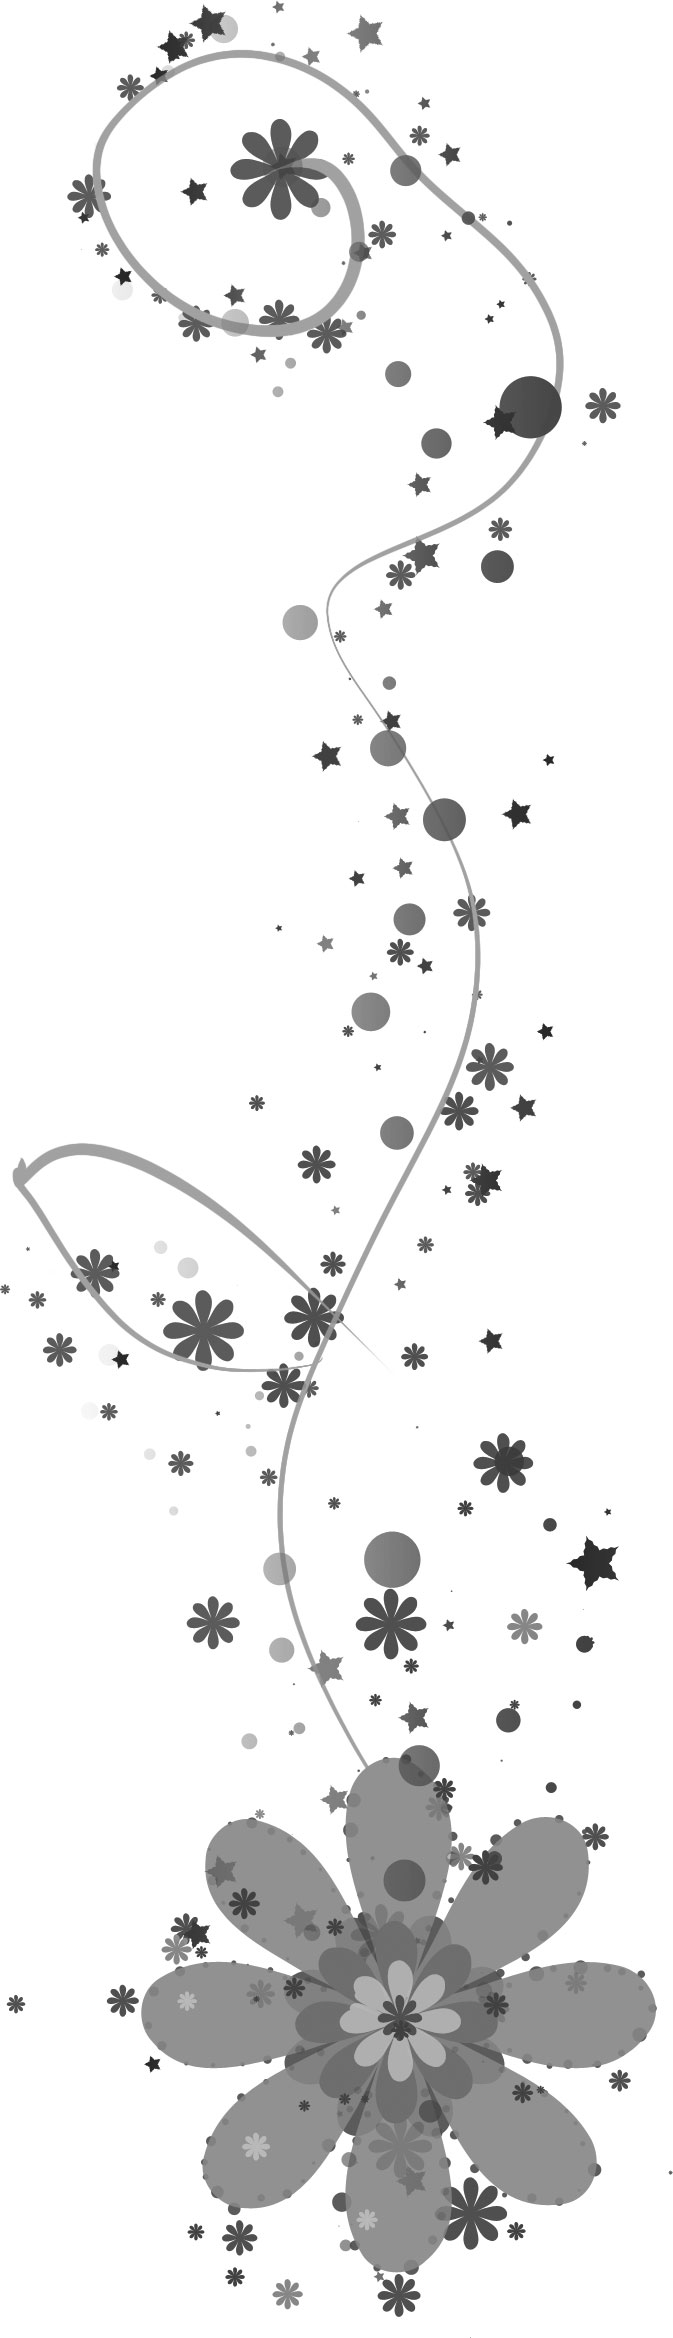 美しい花の画像 75 星 イラスト フリー 白黒